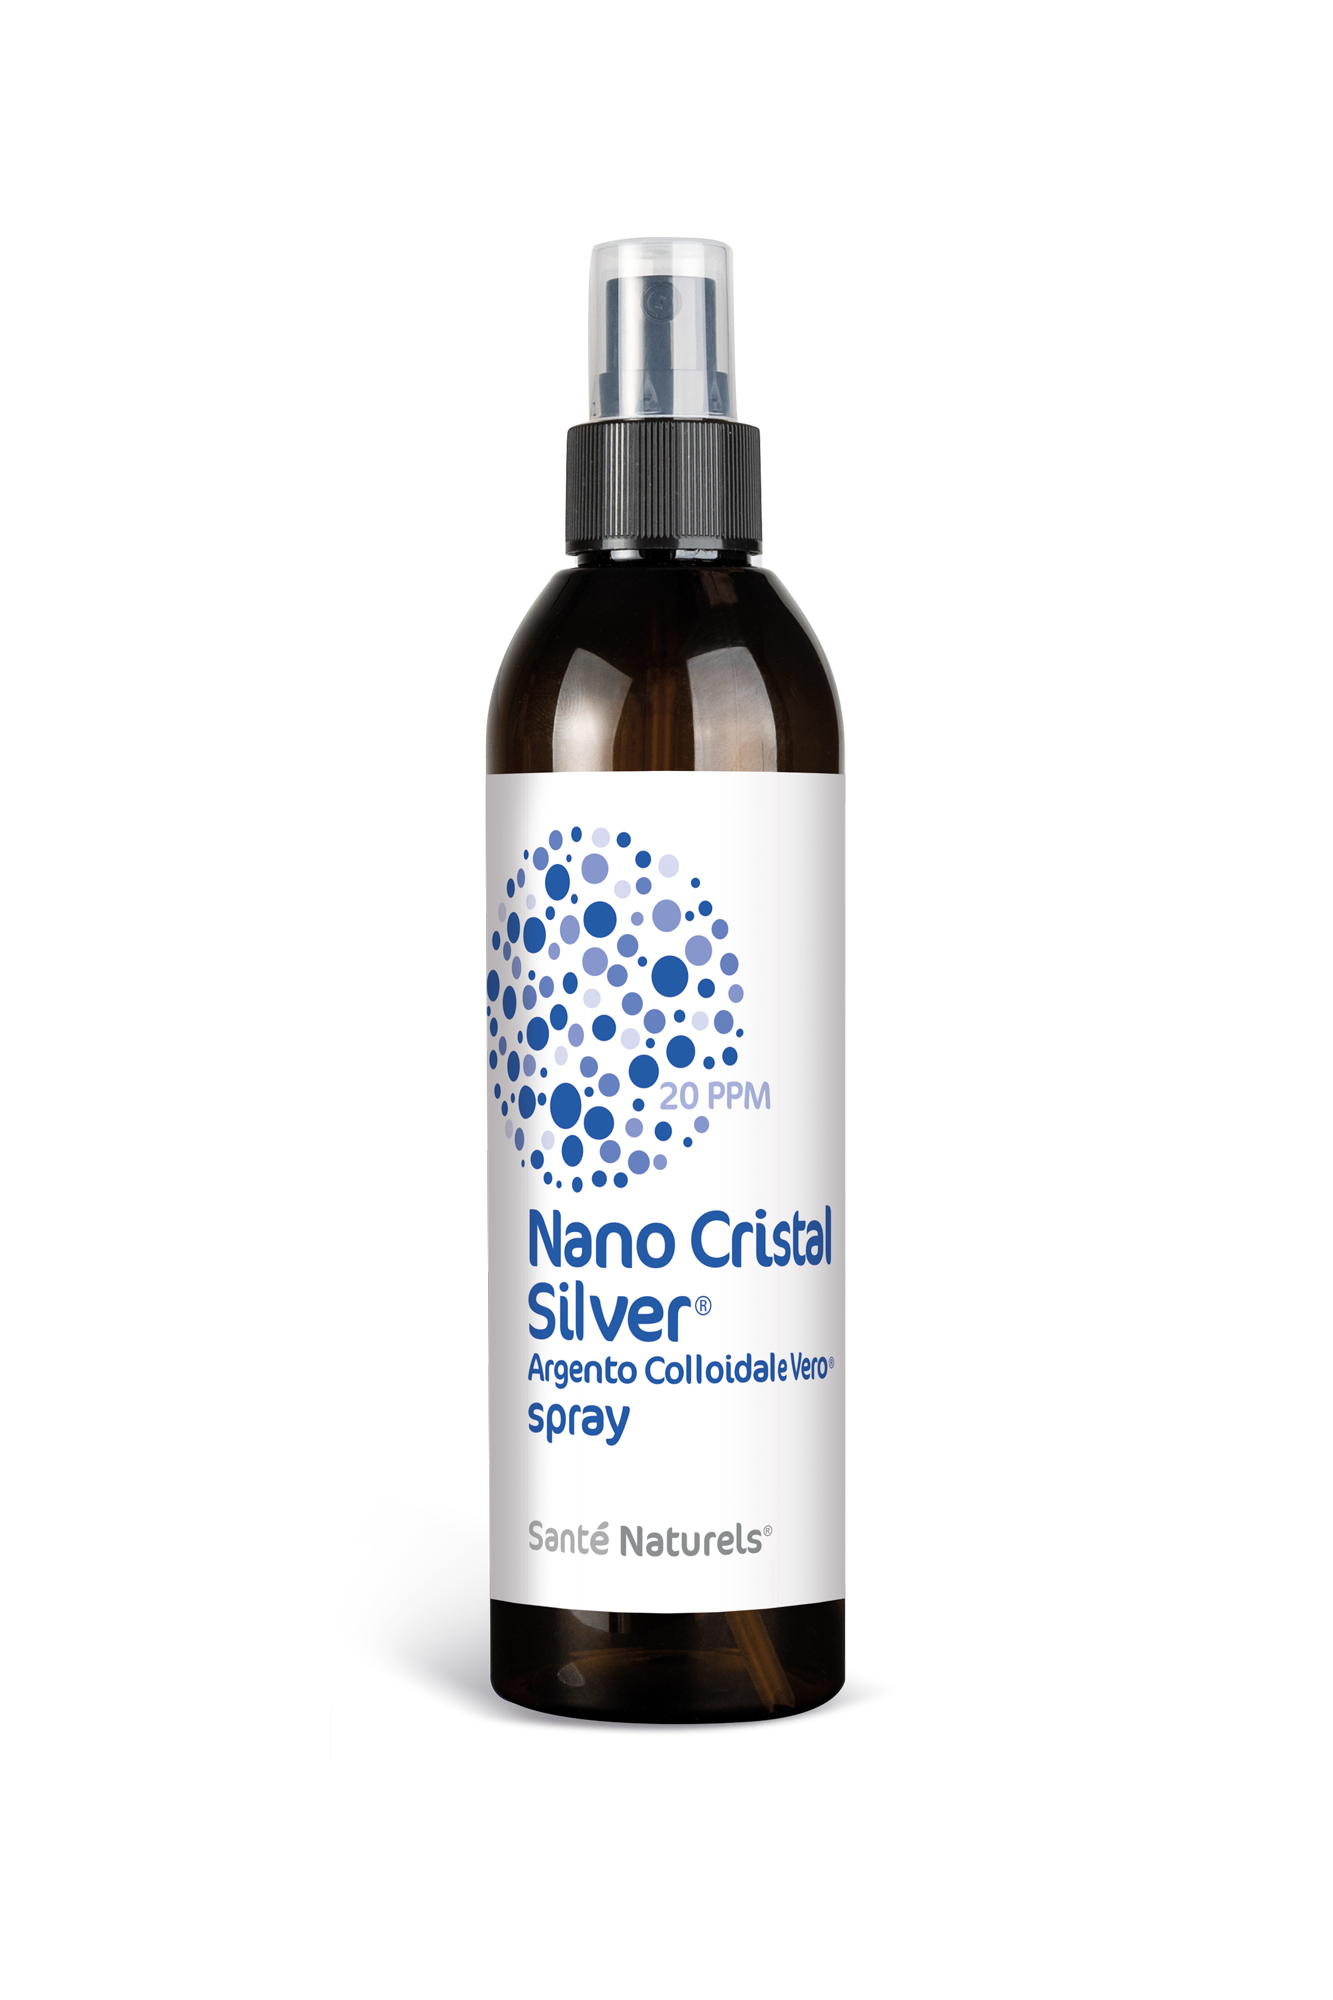 Argento Colloidale Vero® Nano Cristal Silver® 10 e 20 ppm. QUALITA' E CONVENIENZA